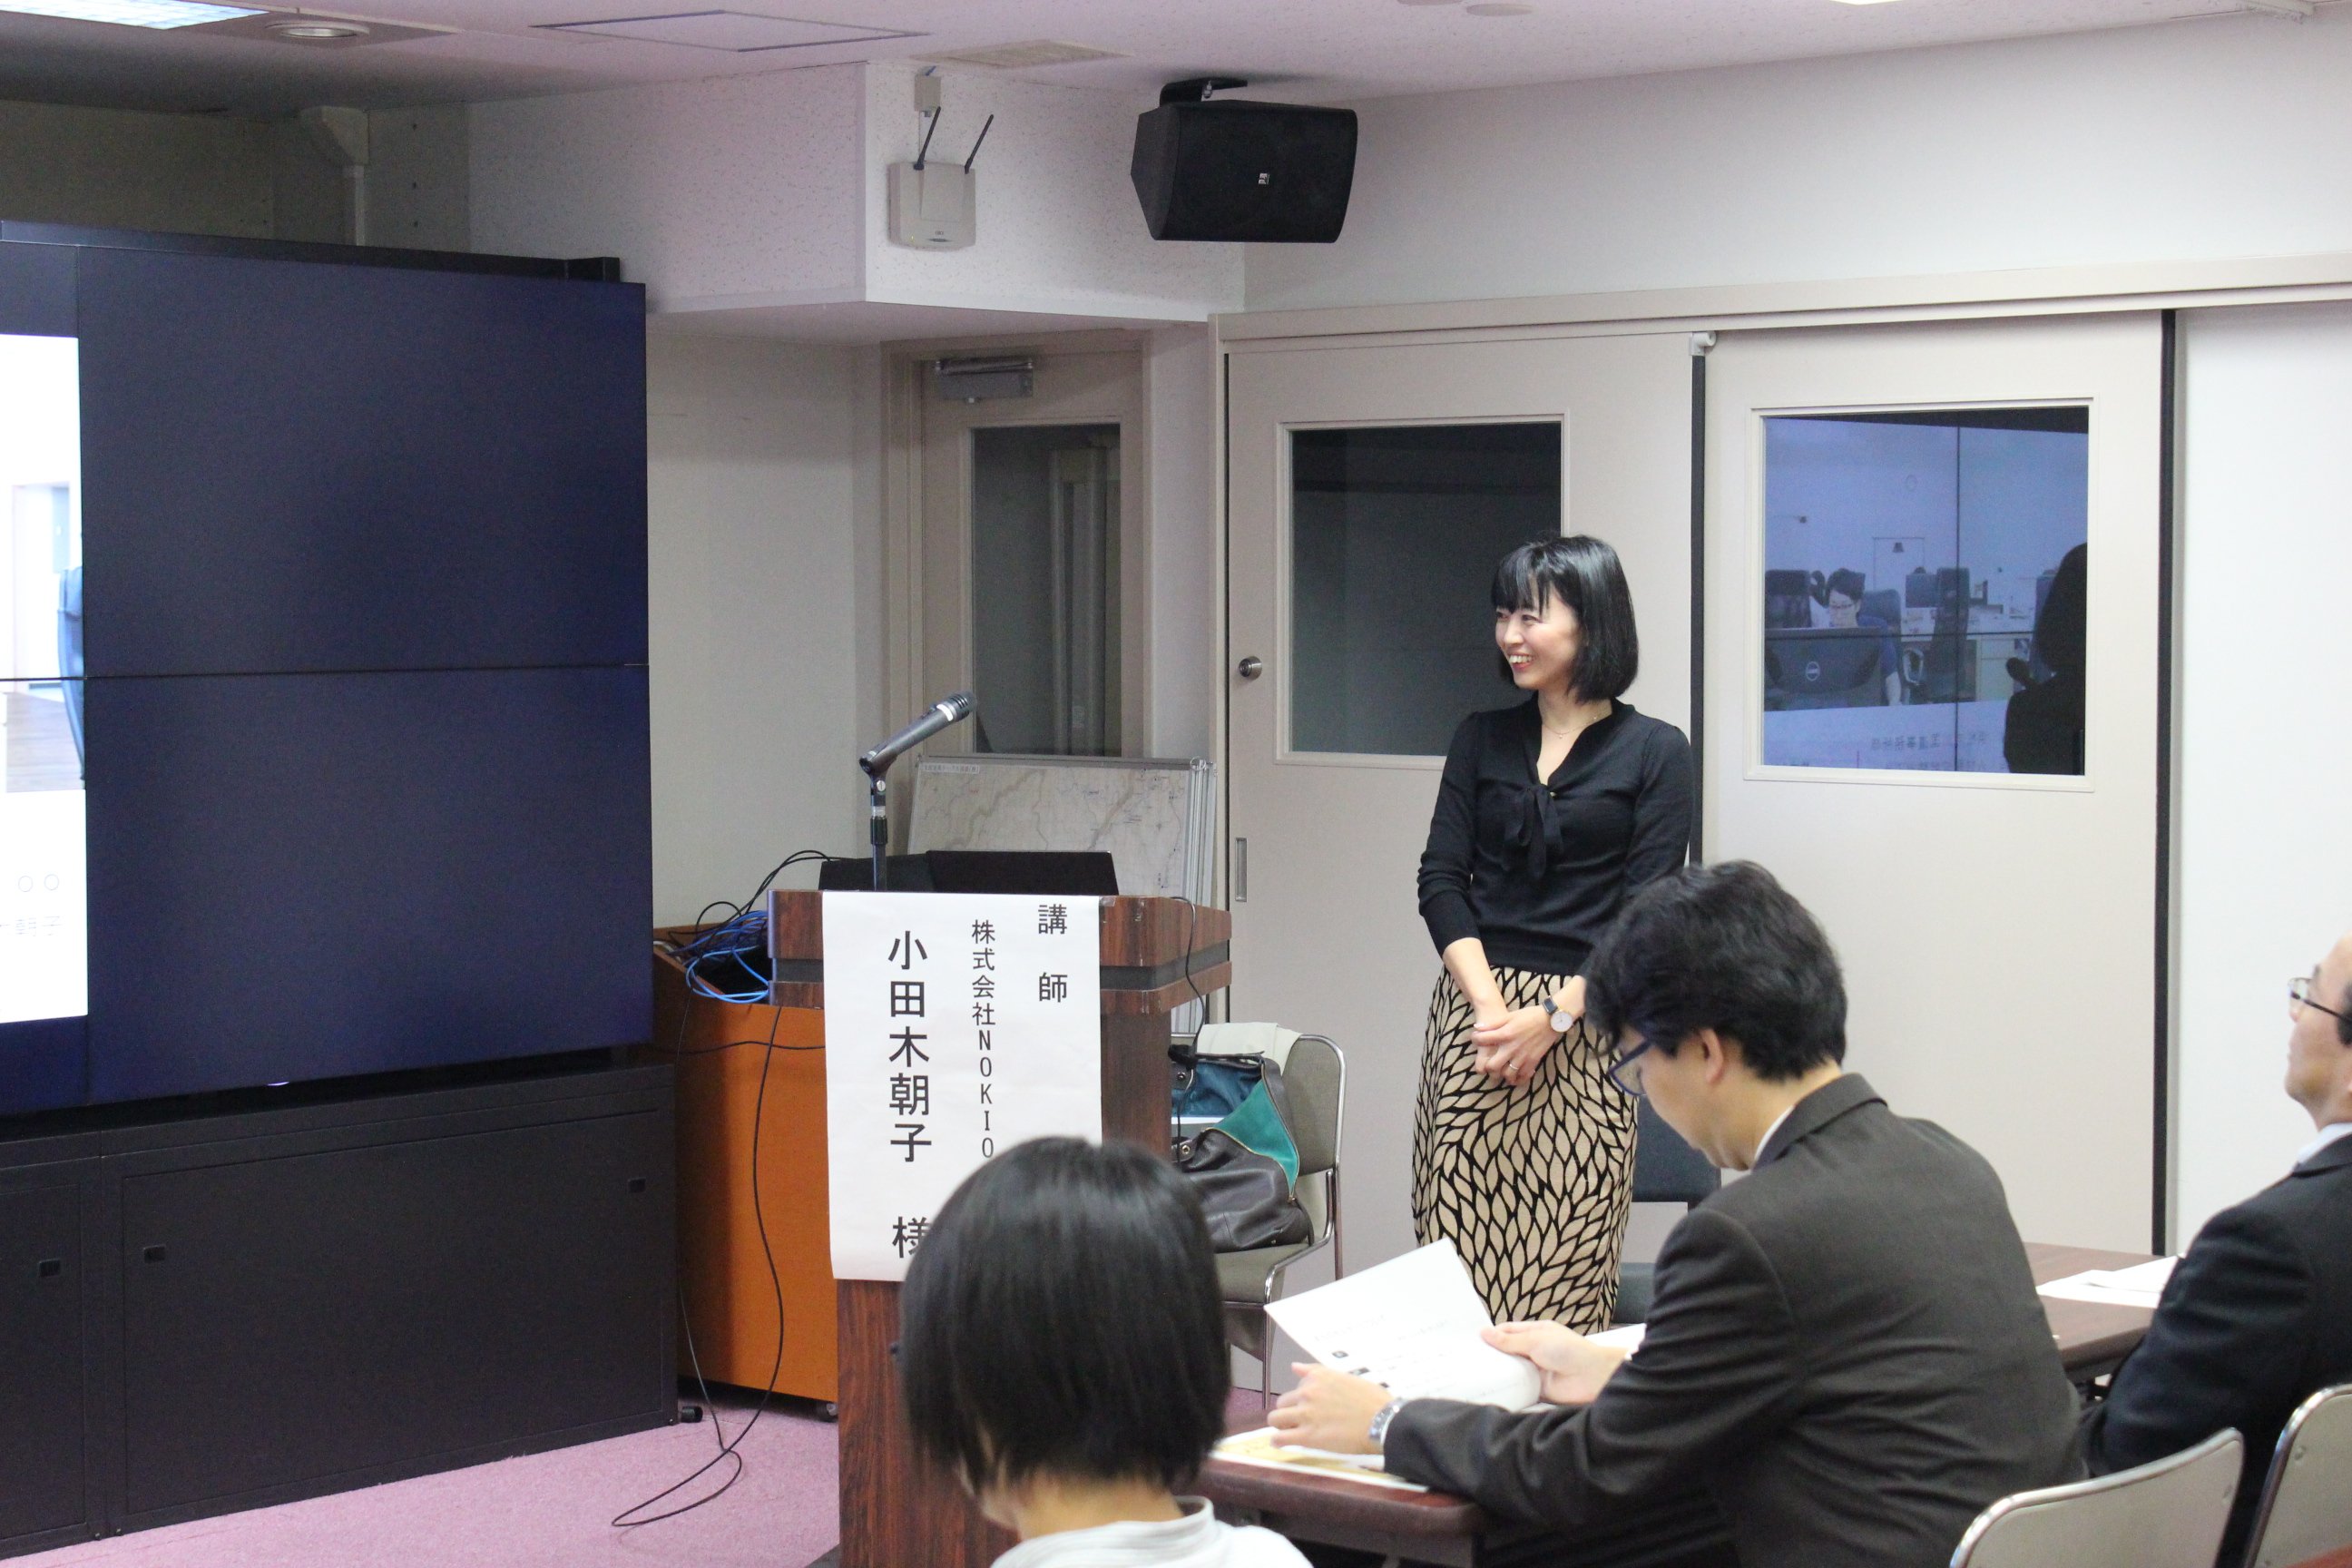 国土交通省事務所での出張セミナー「NOKIOOの働き方」